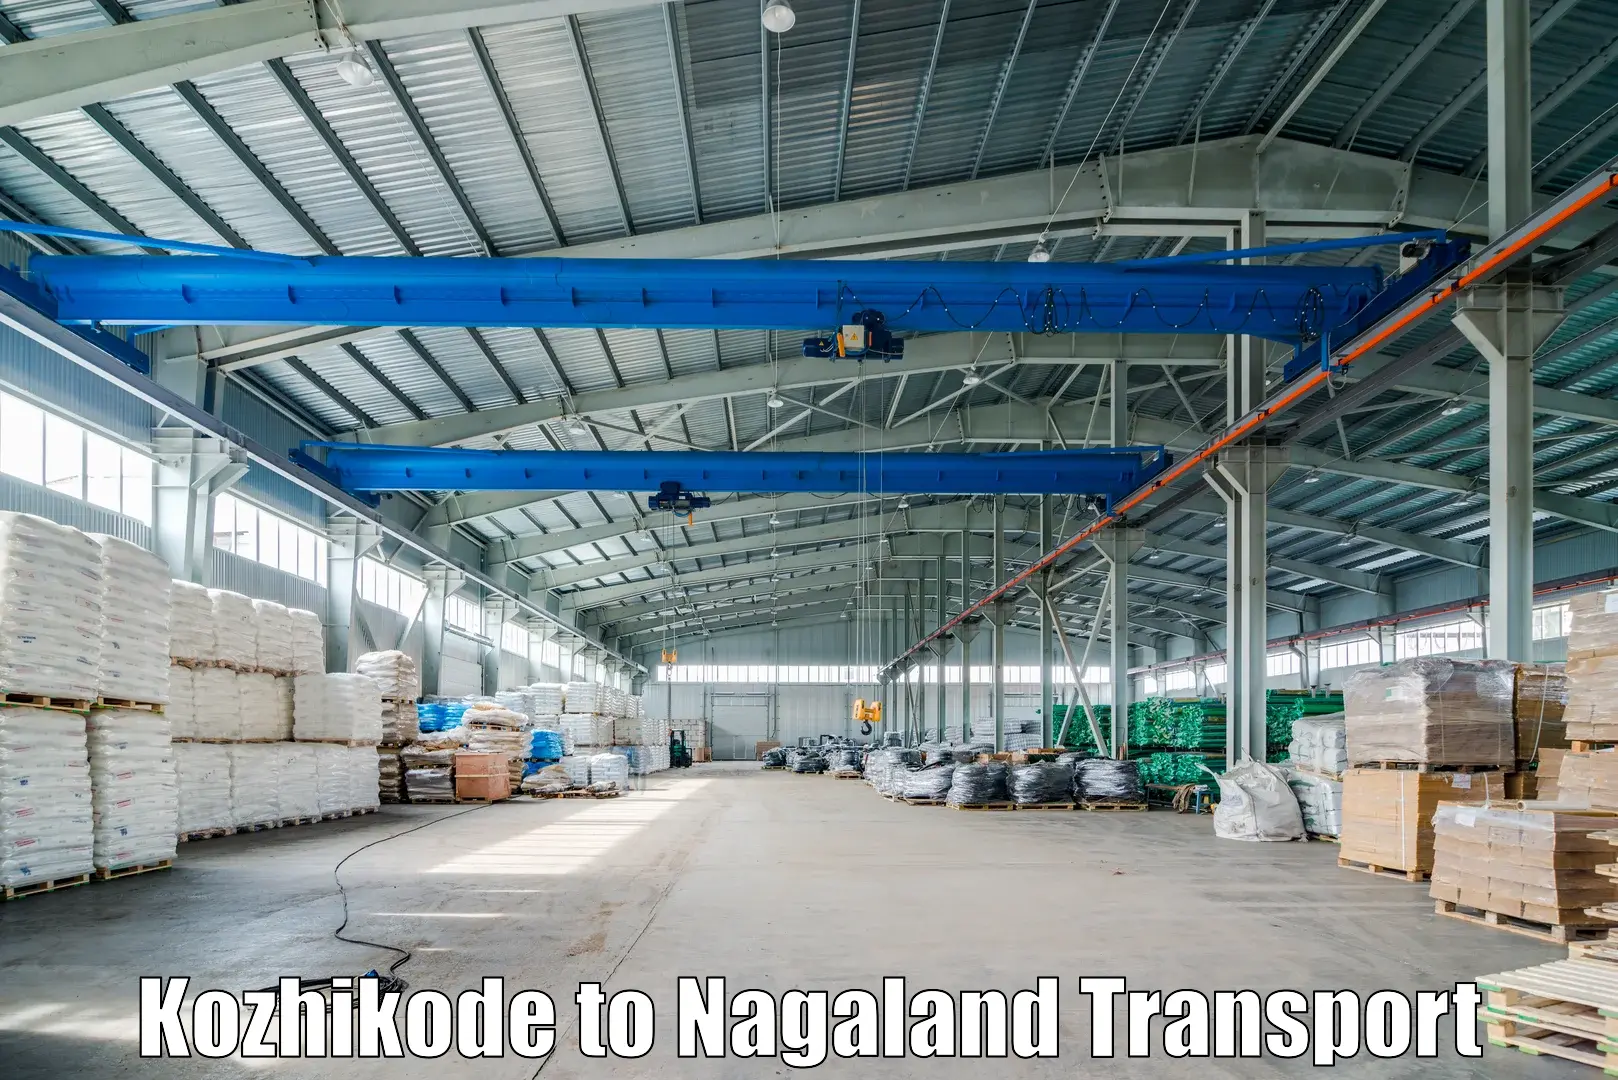 Shipping partner Kozhikode to NIT Nagaland